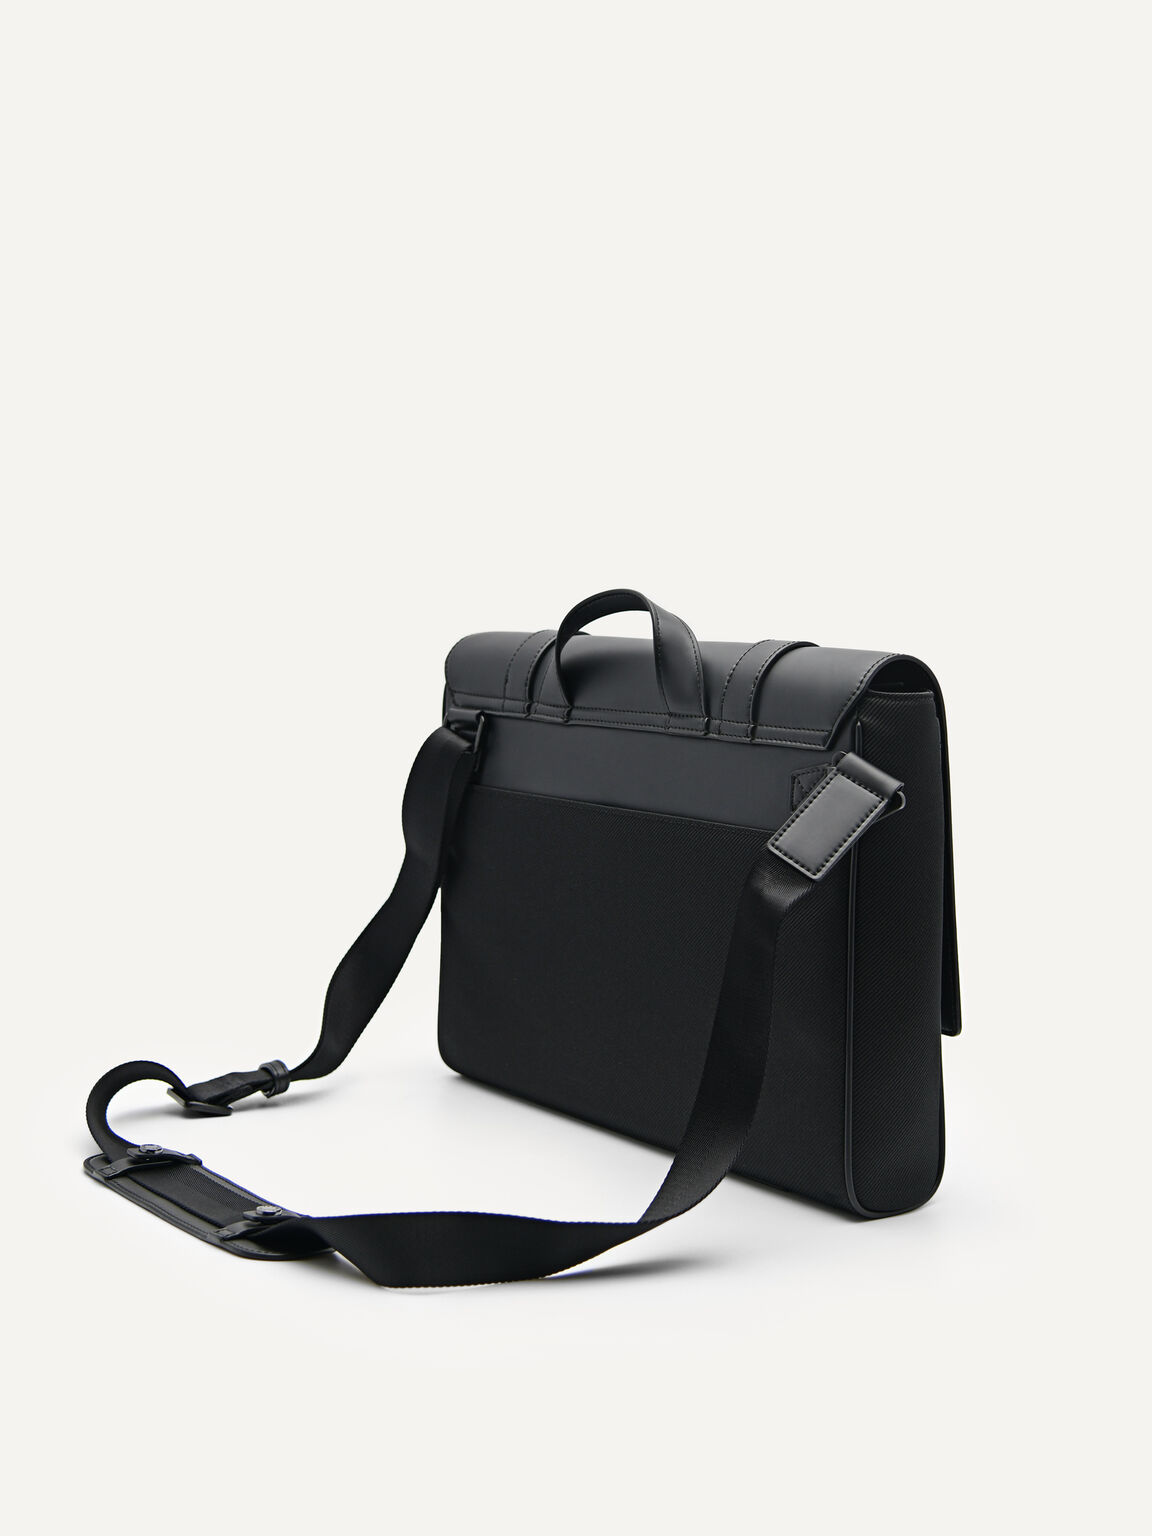 Rainier Messenger Bag, Black